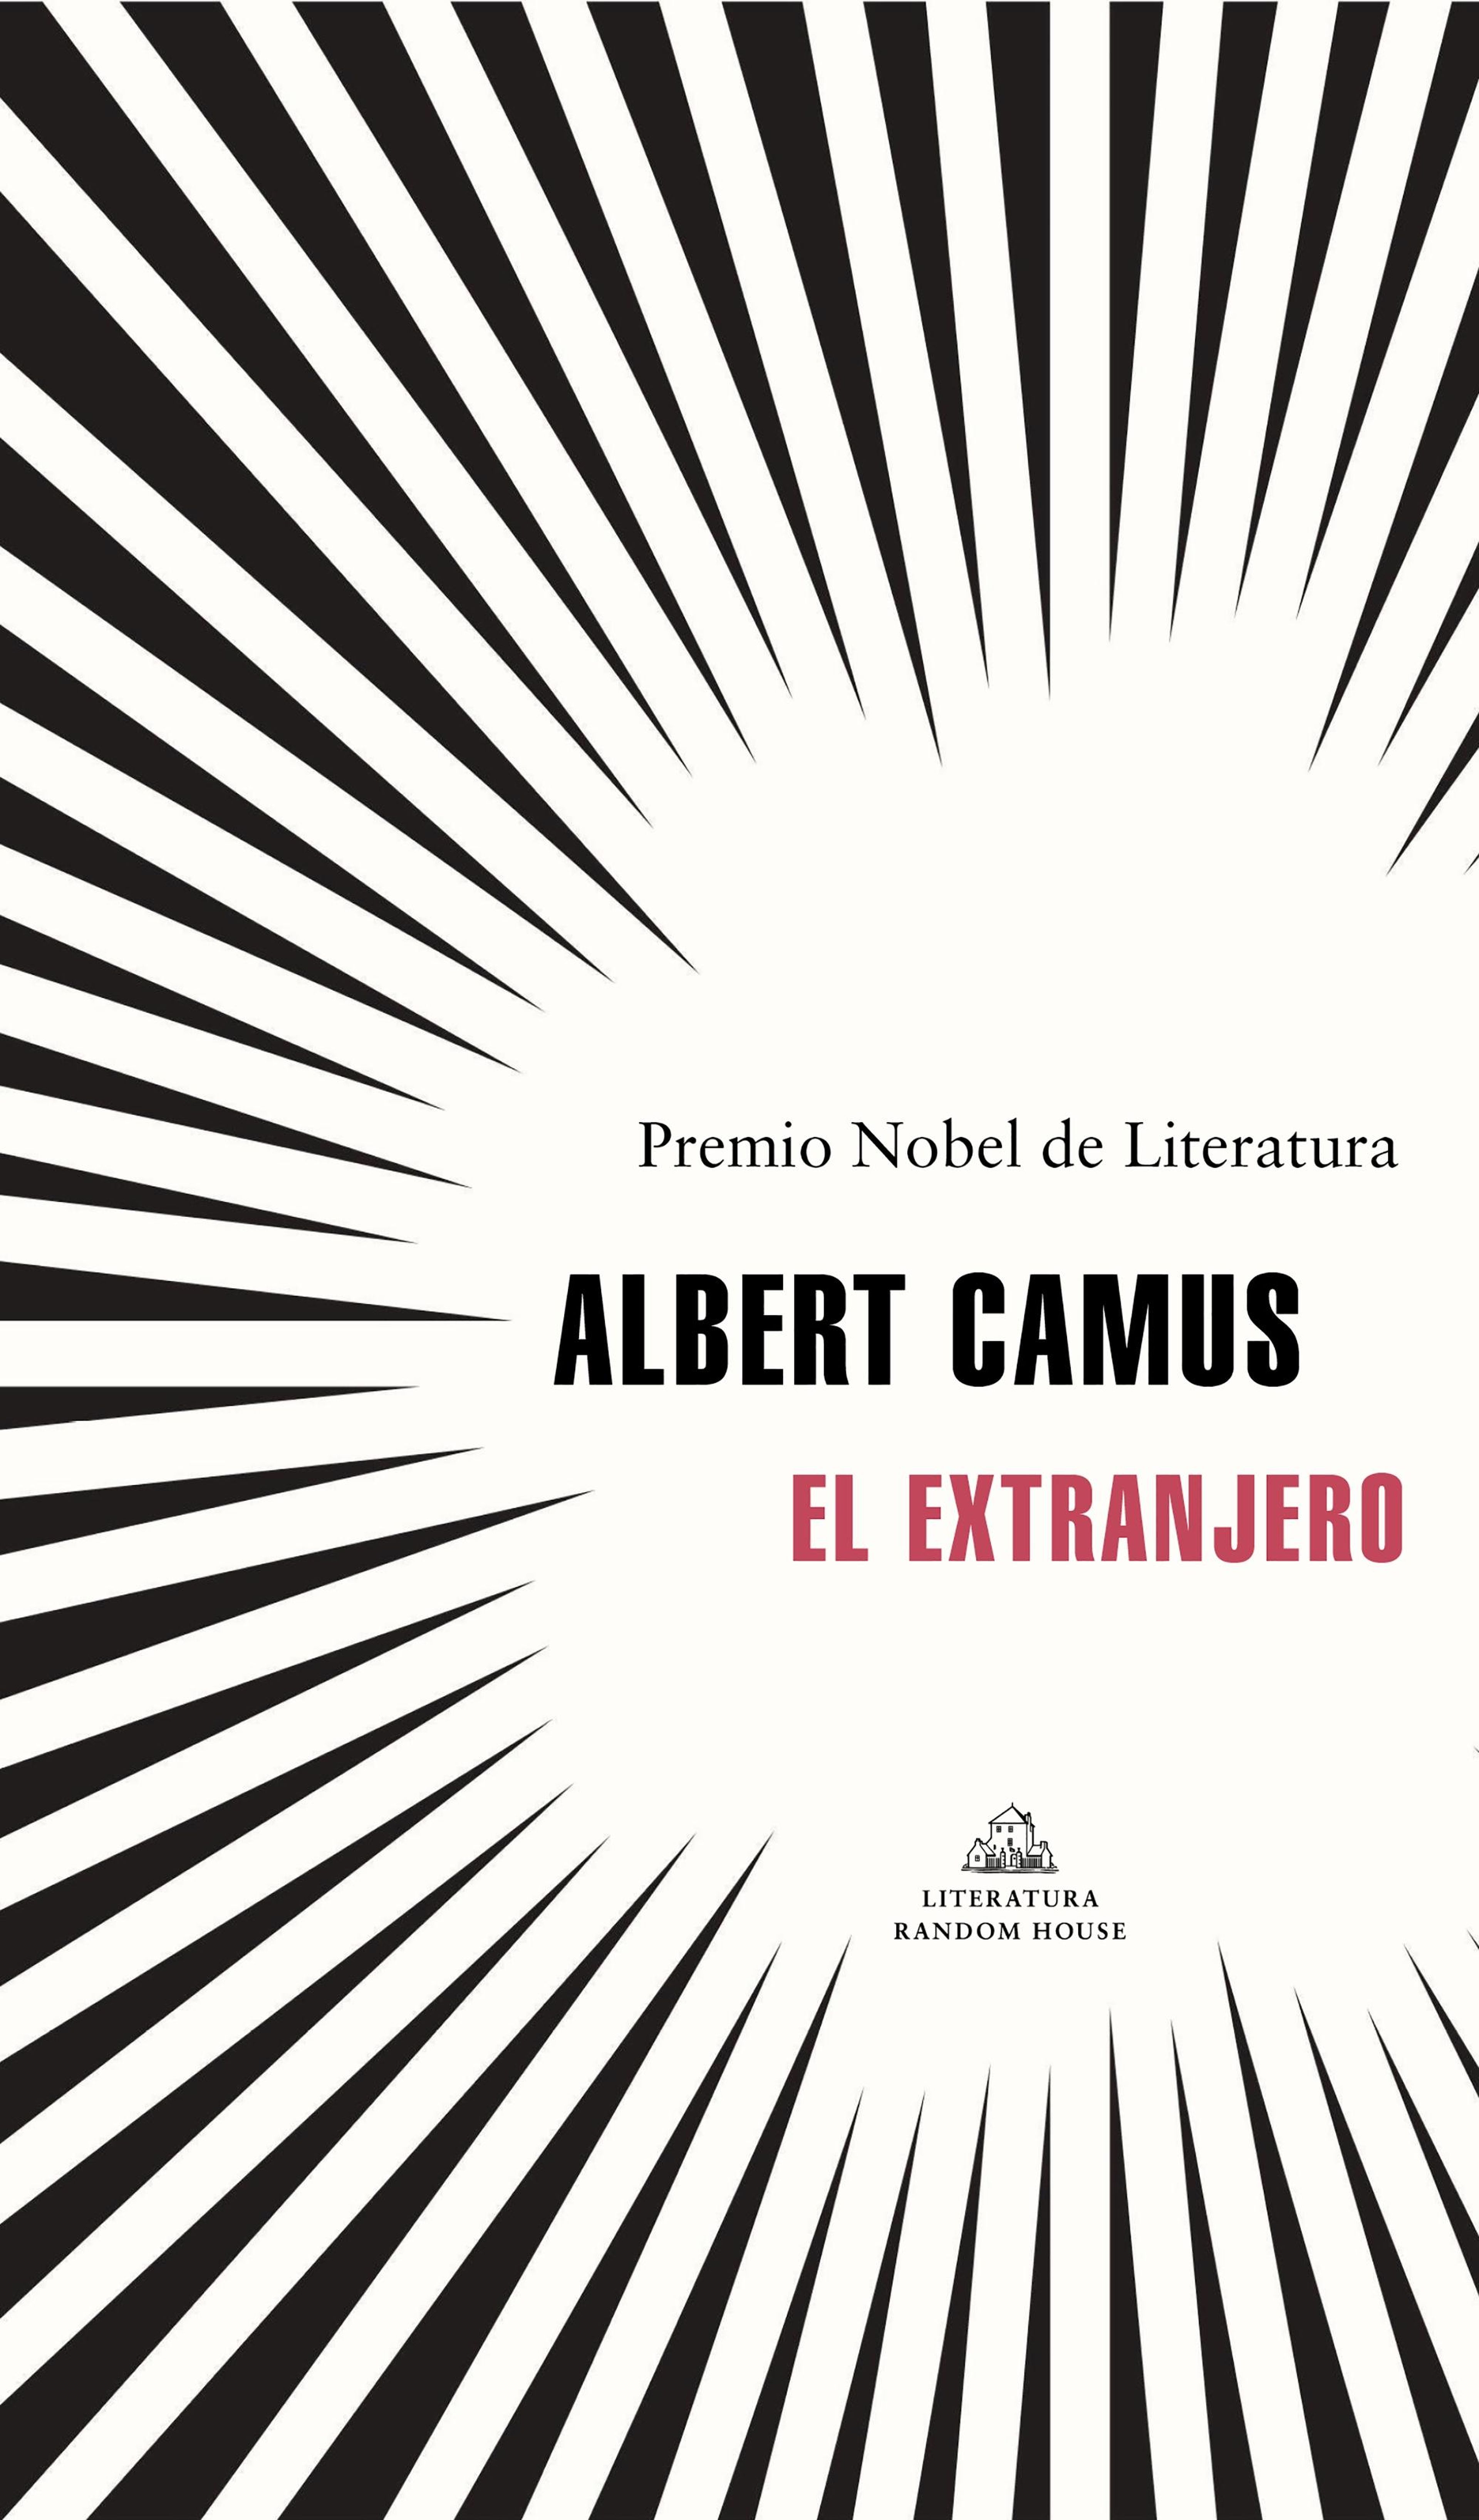 El extranjero (Albert Camus, 1942)